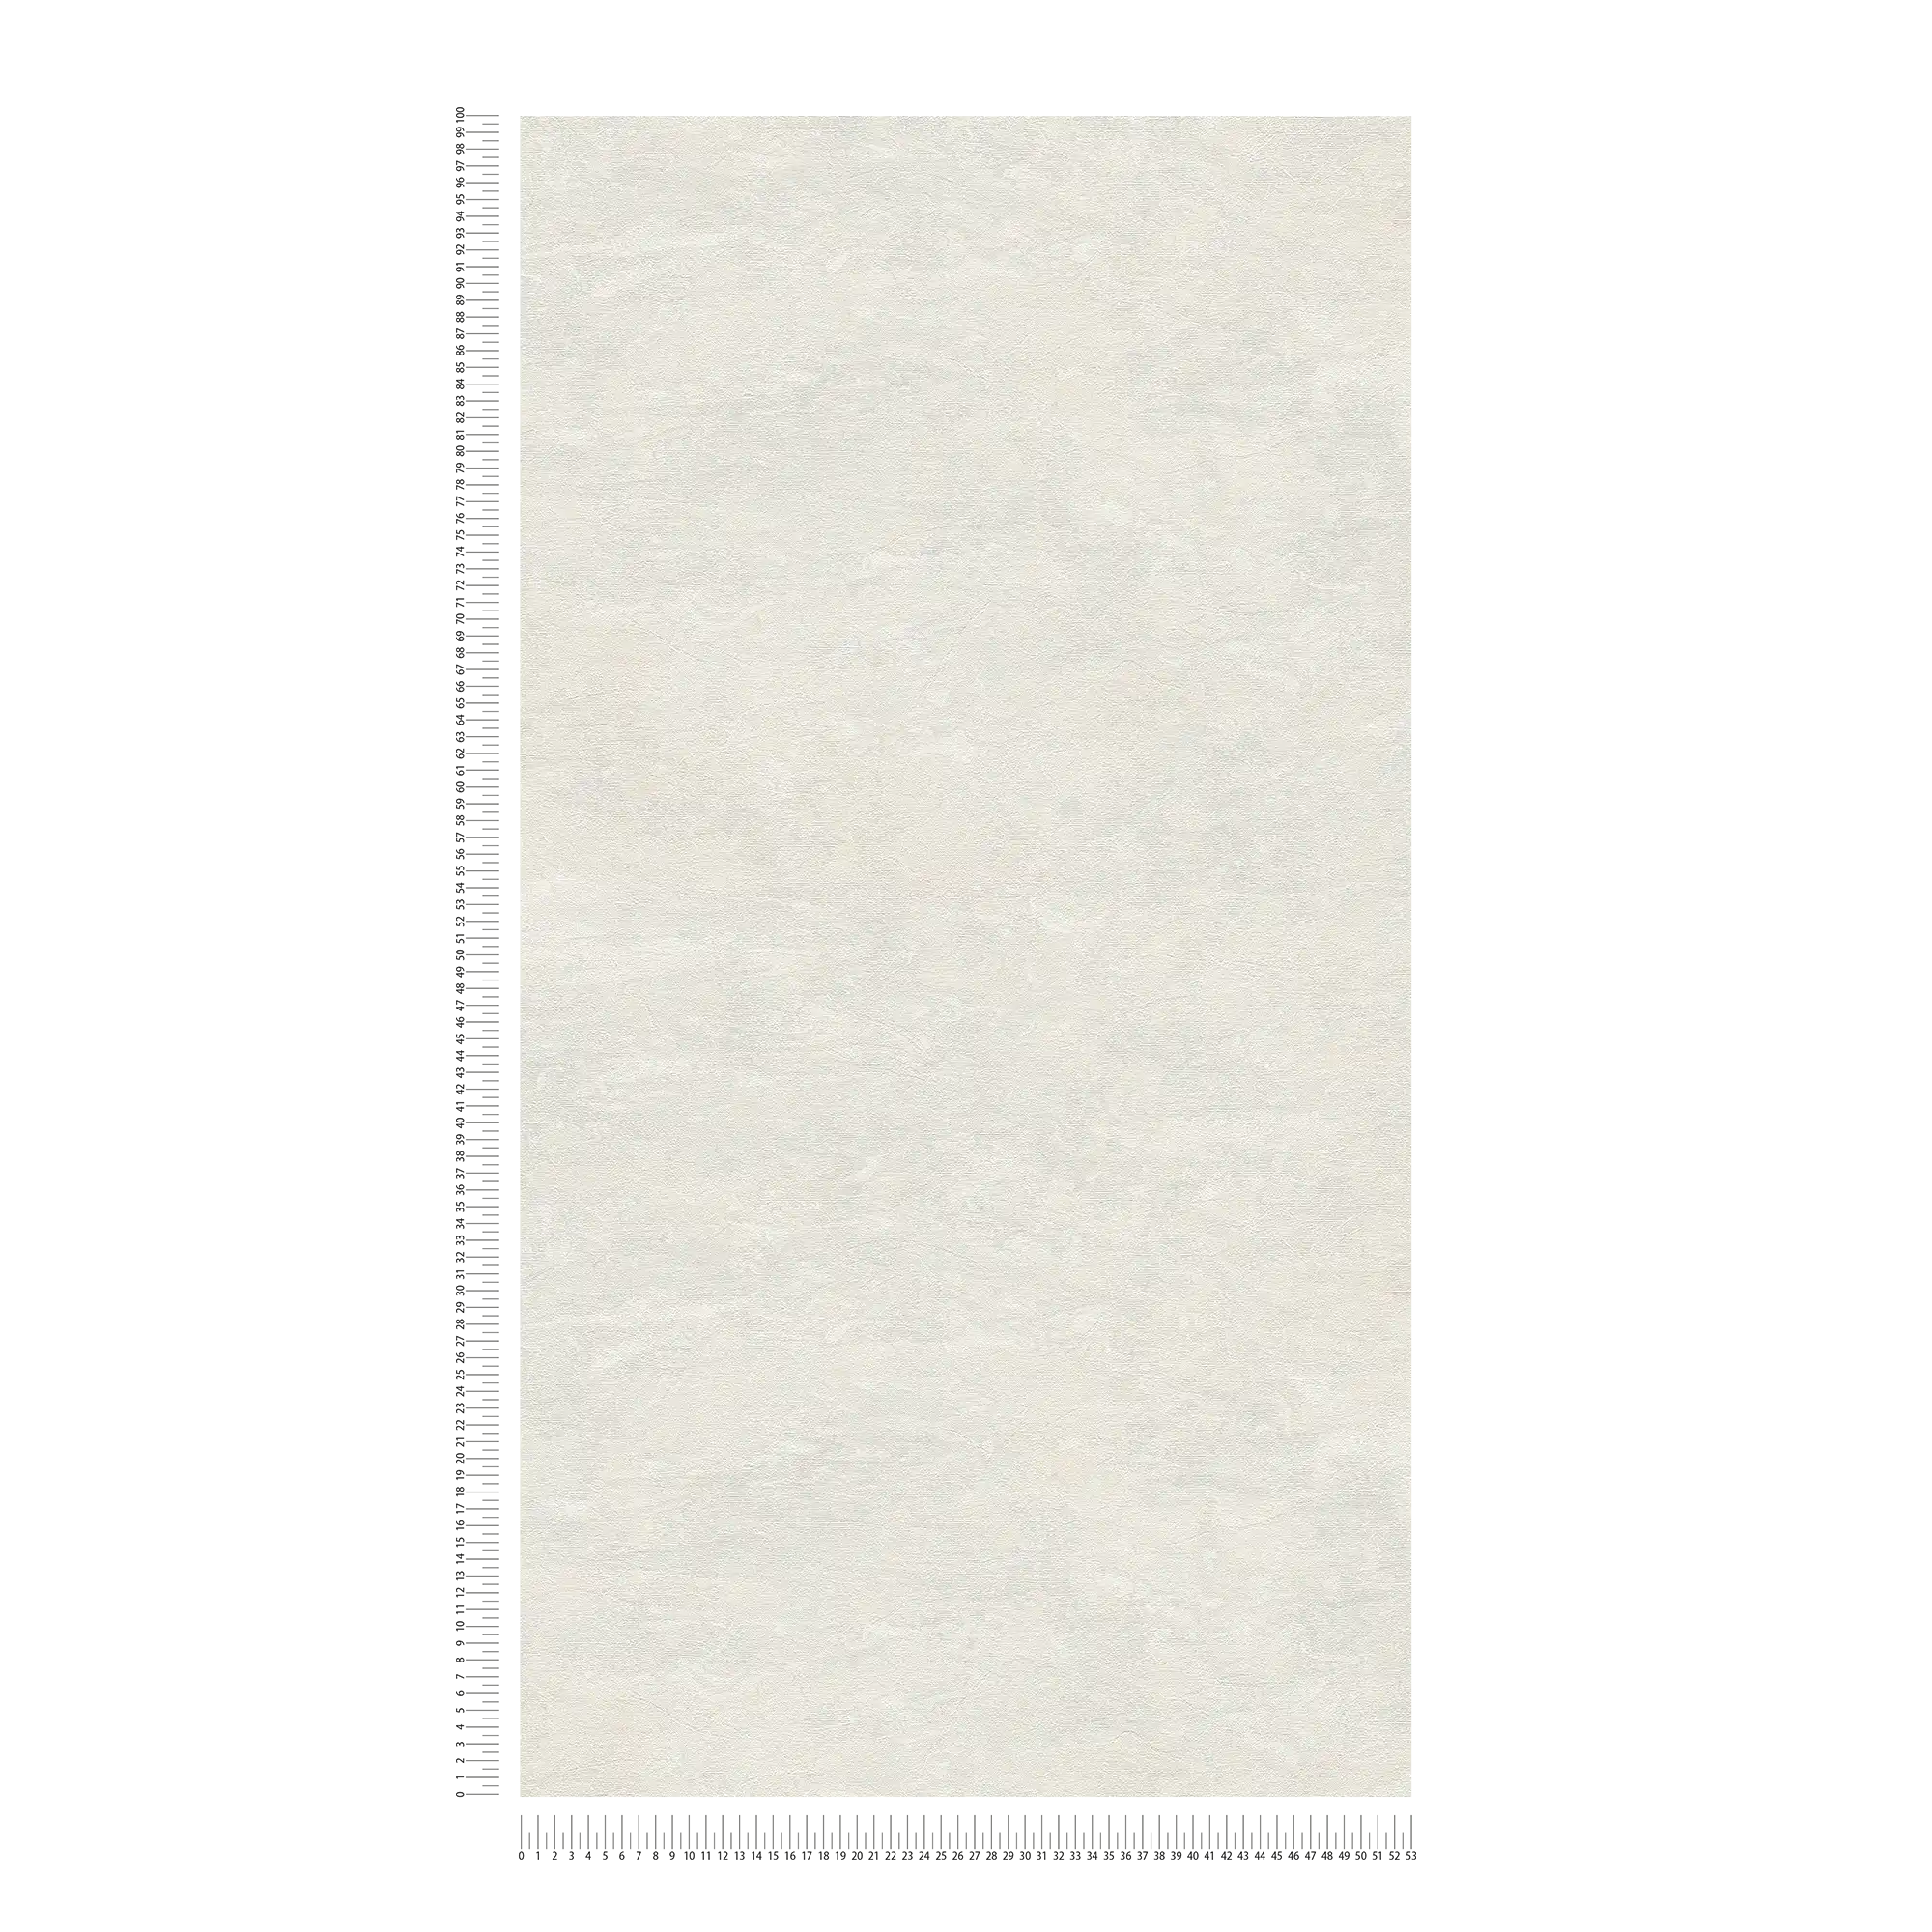             Cremeweiße Tapete mit dezenter Marmorierung – Weiß, Grau
        